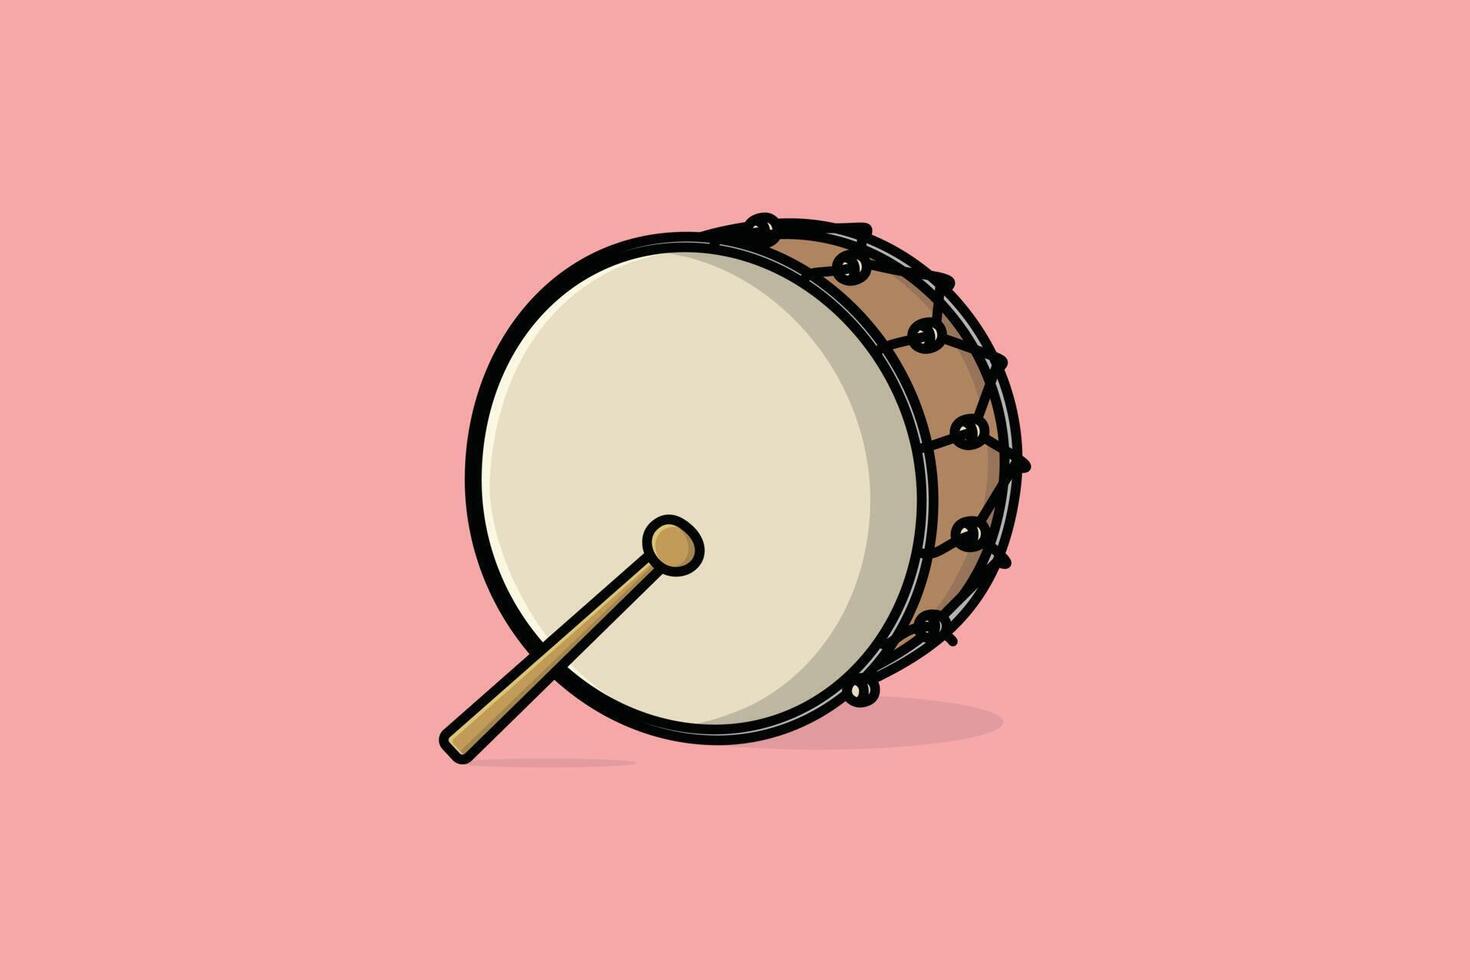 caisse claire de tambour avec illustration vectorielle de bâtons. concept d'icône d'objet d'instrument de musique. symbole musical de tambour ou caisse claire avec dessin vectoriel de bâtons sur fond rose avec ombre.